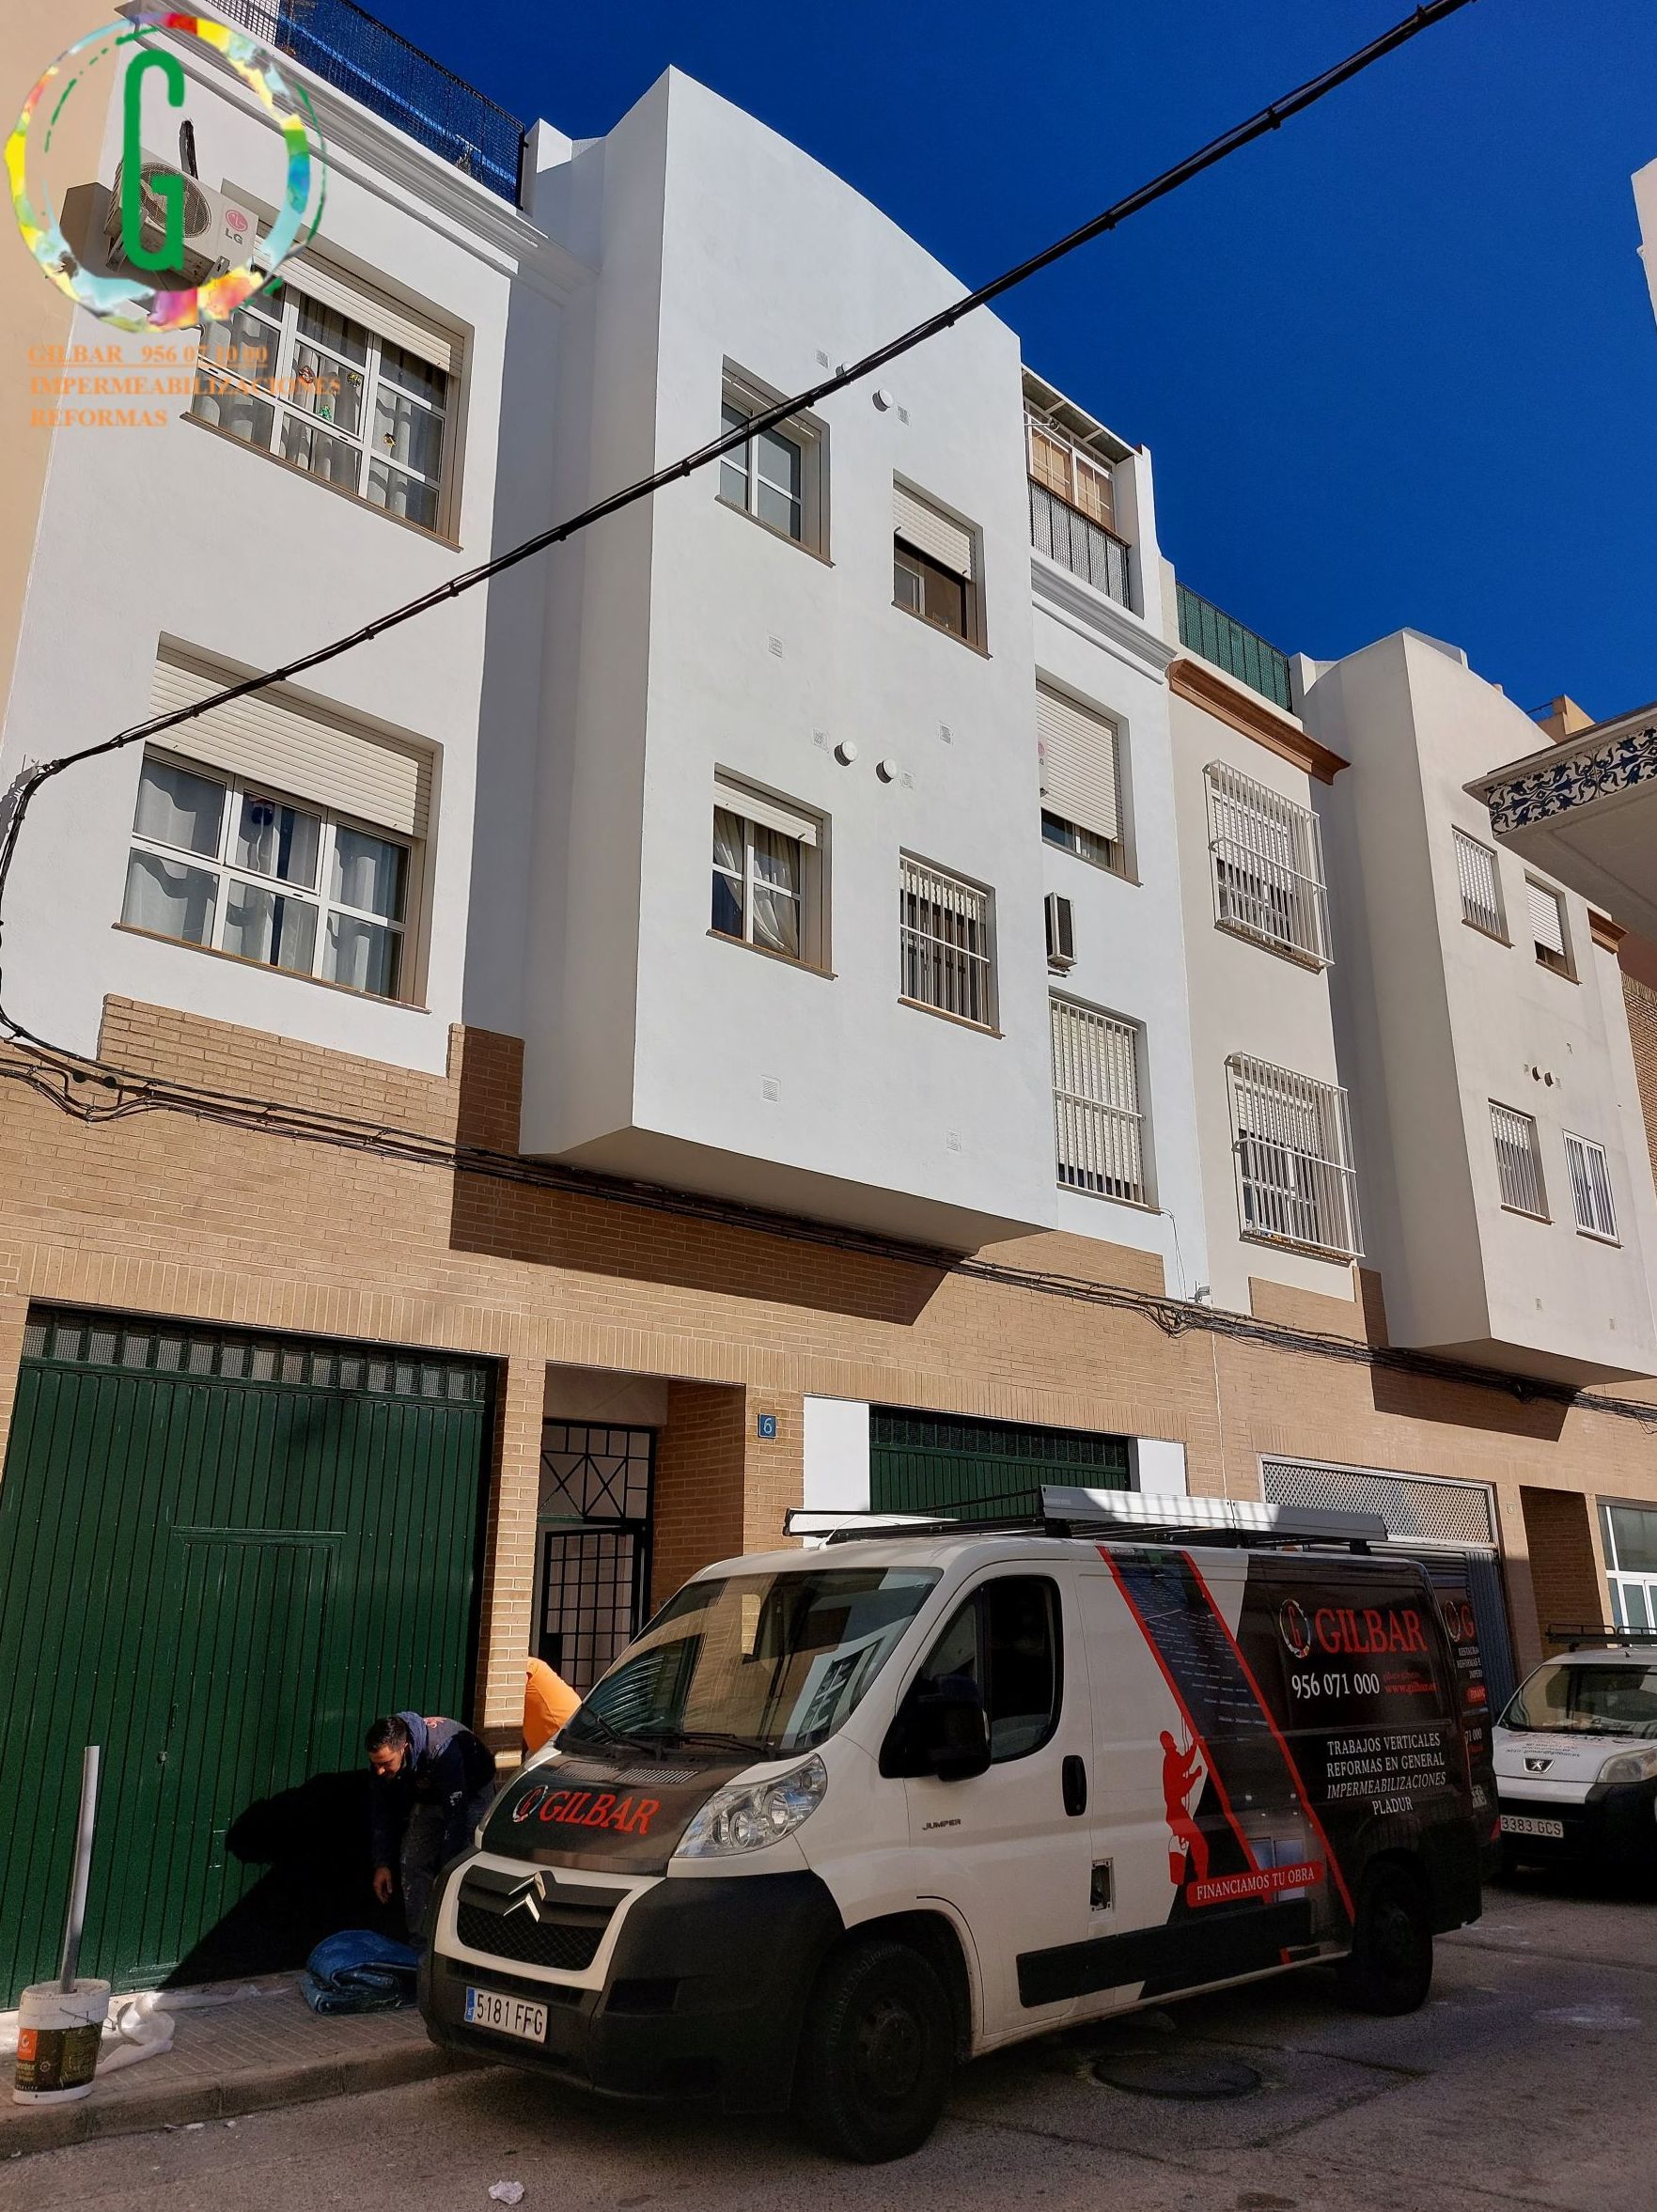 Foto 7 de Pintores en Cádiz | Gilbar